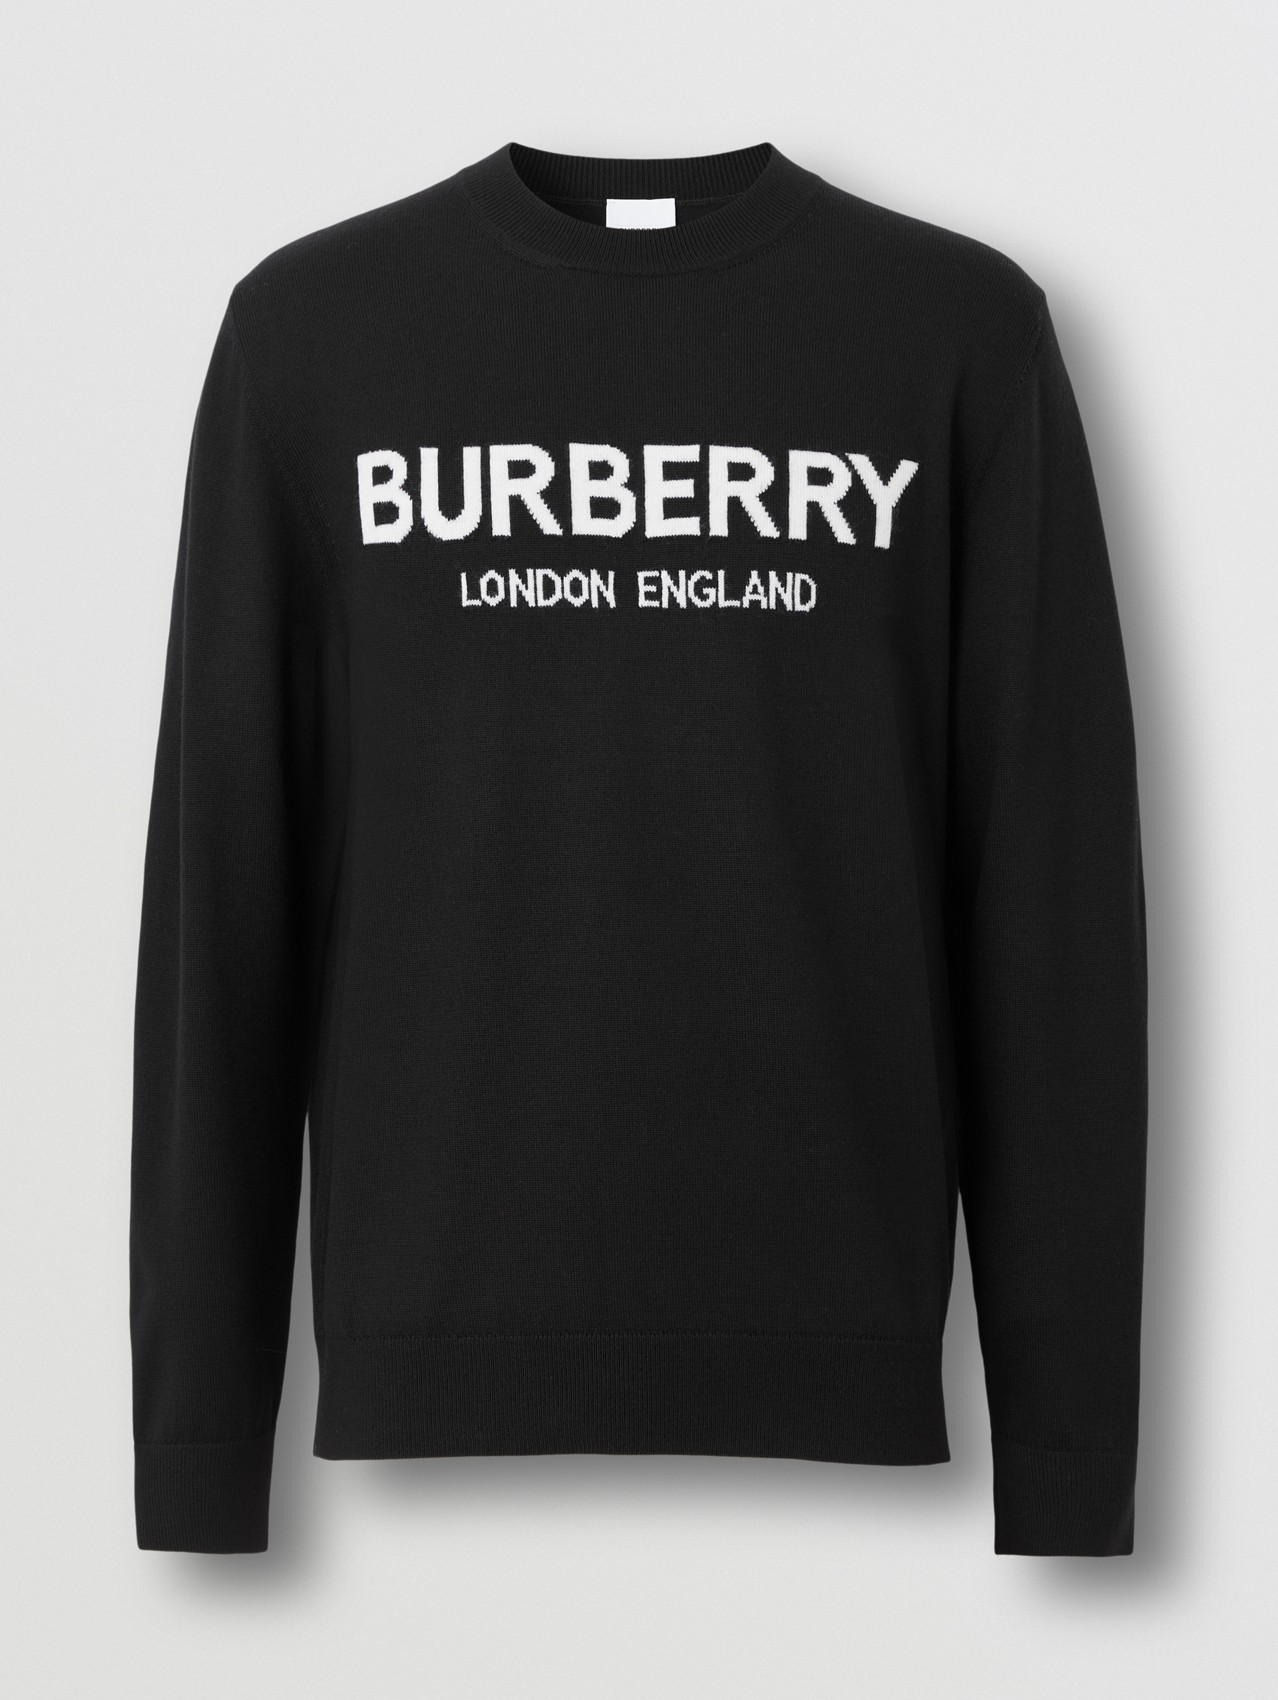 Men's Designer Hoodies & Sweatshirts | Burberry® Official